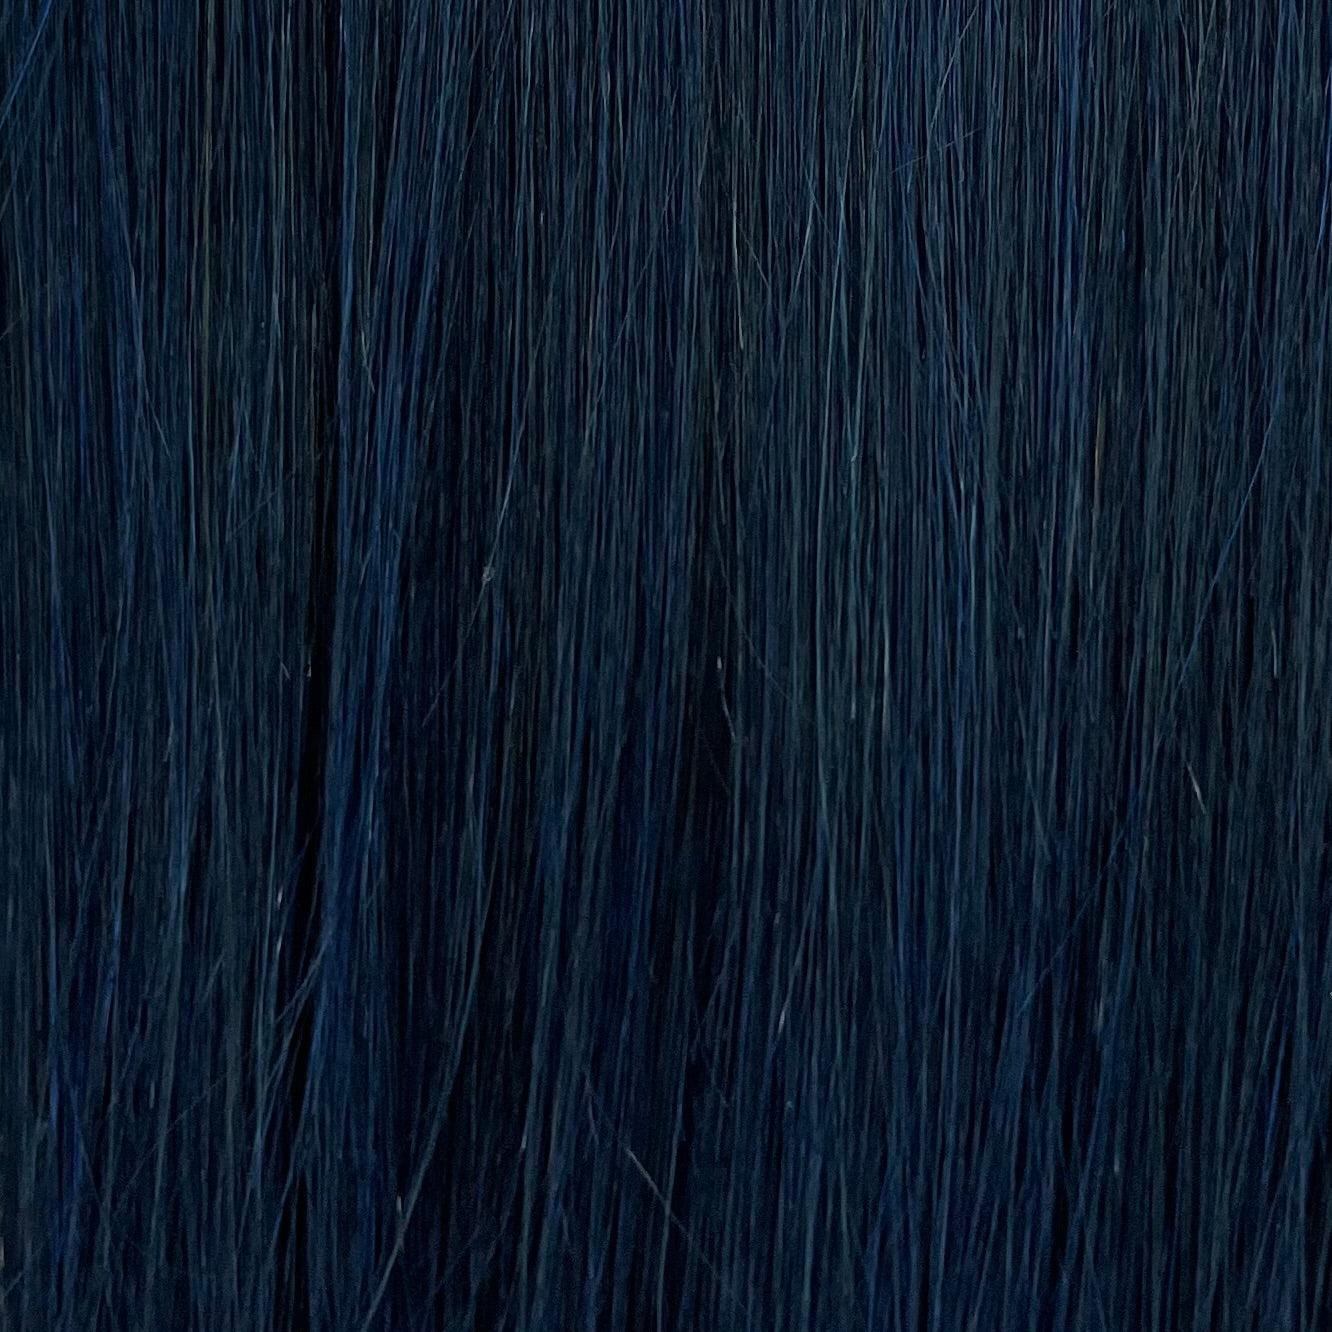 Empire 100% Human Hair by Sensationnel - Yaki Straight (Unique Colors)